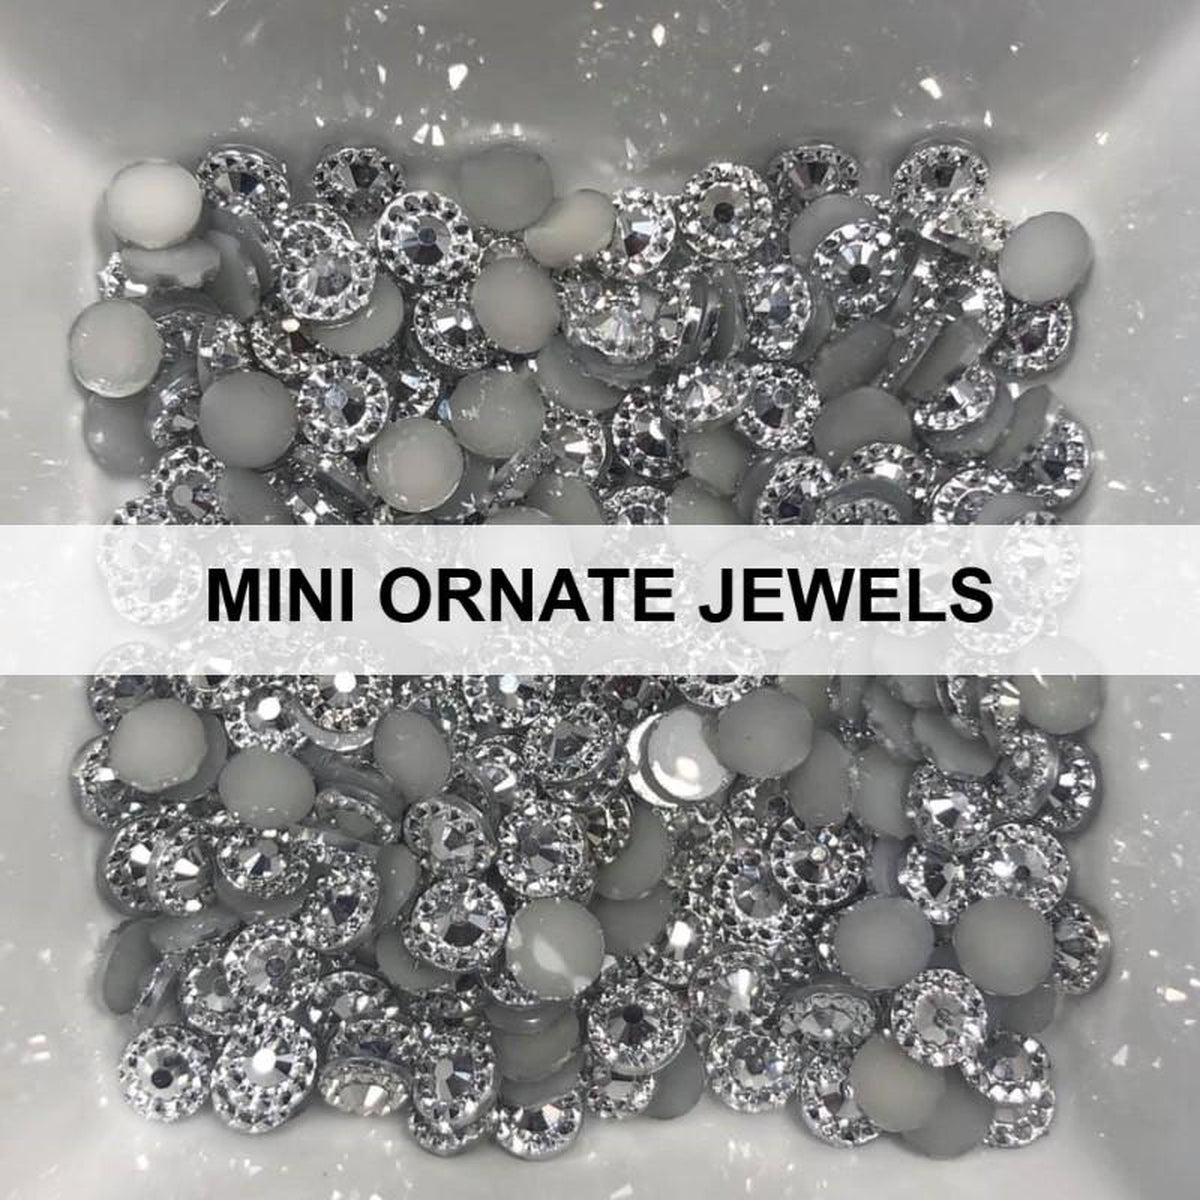 Mini Ornate Jewels - Kat Scrappiness